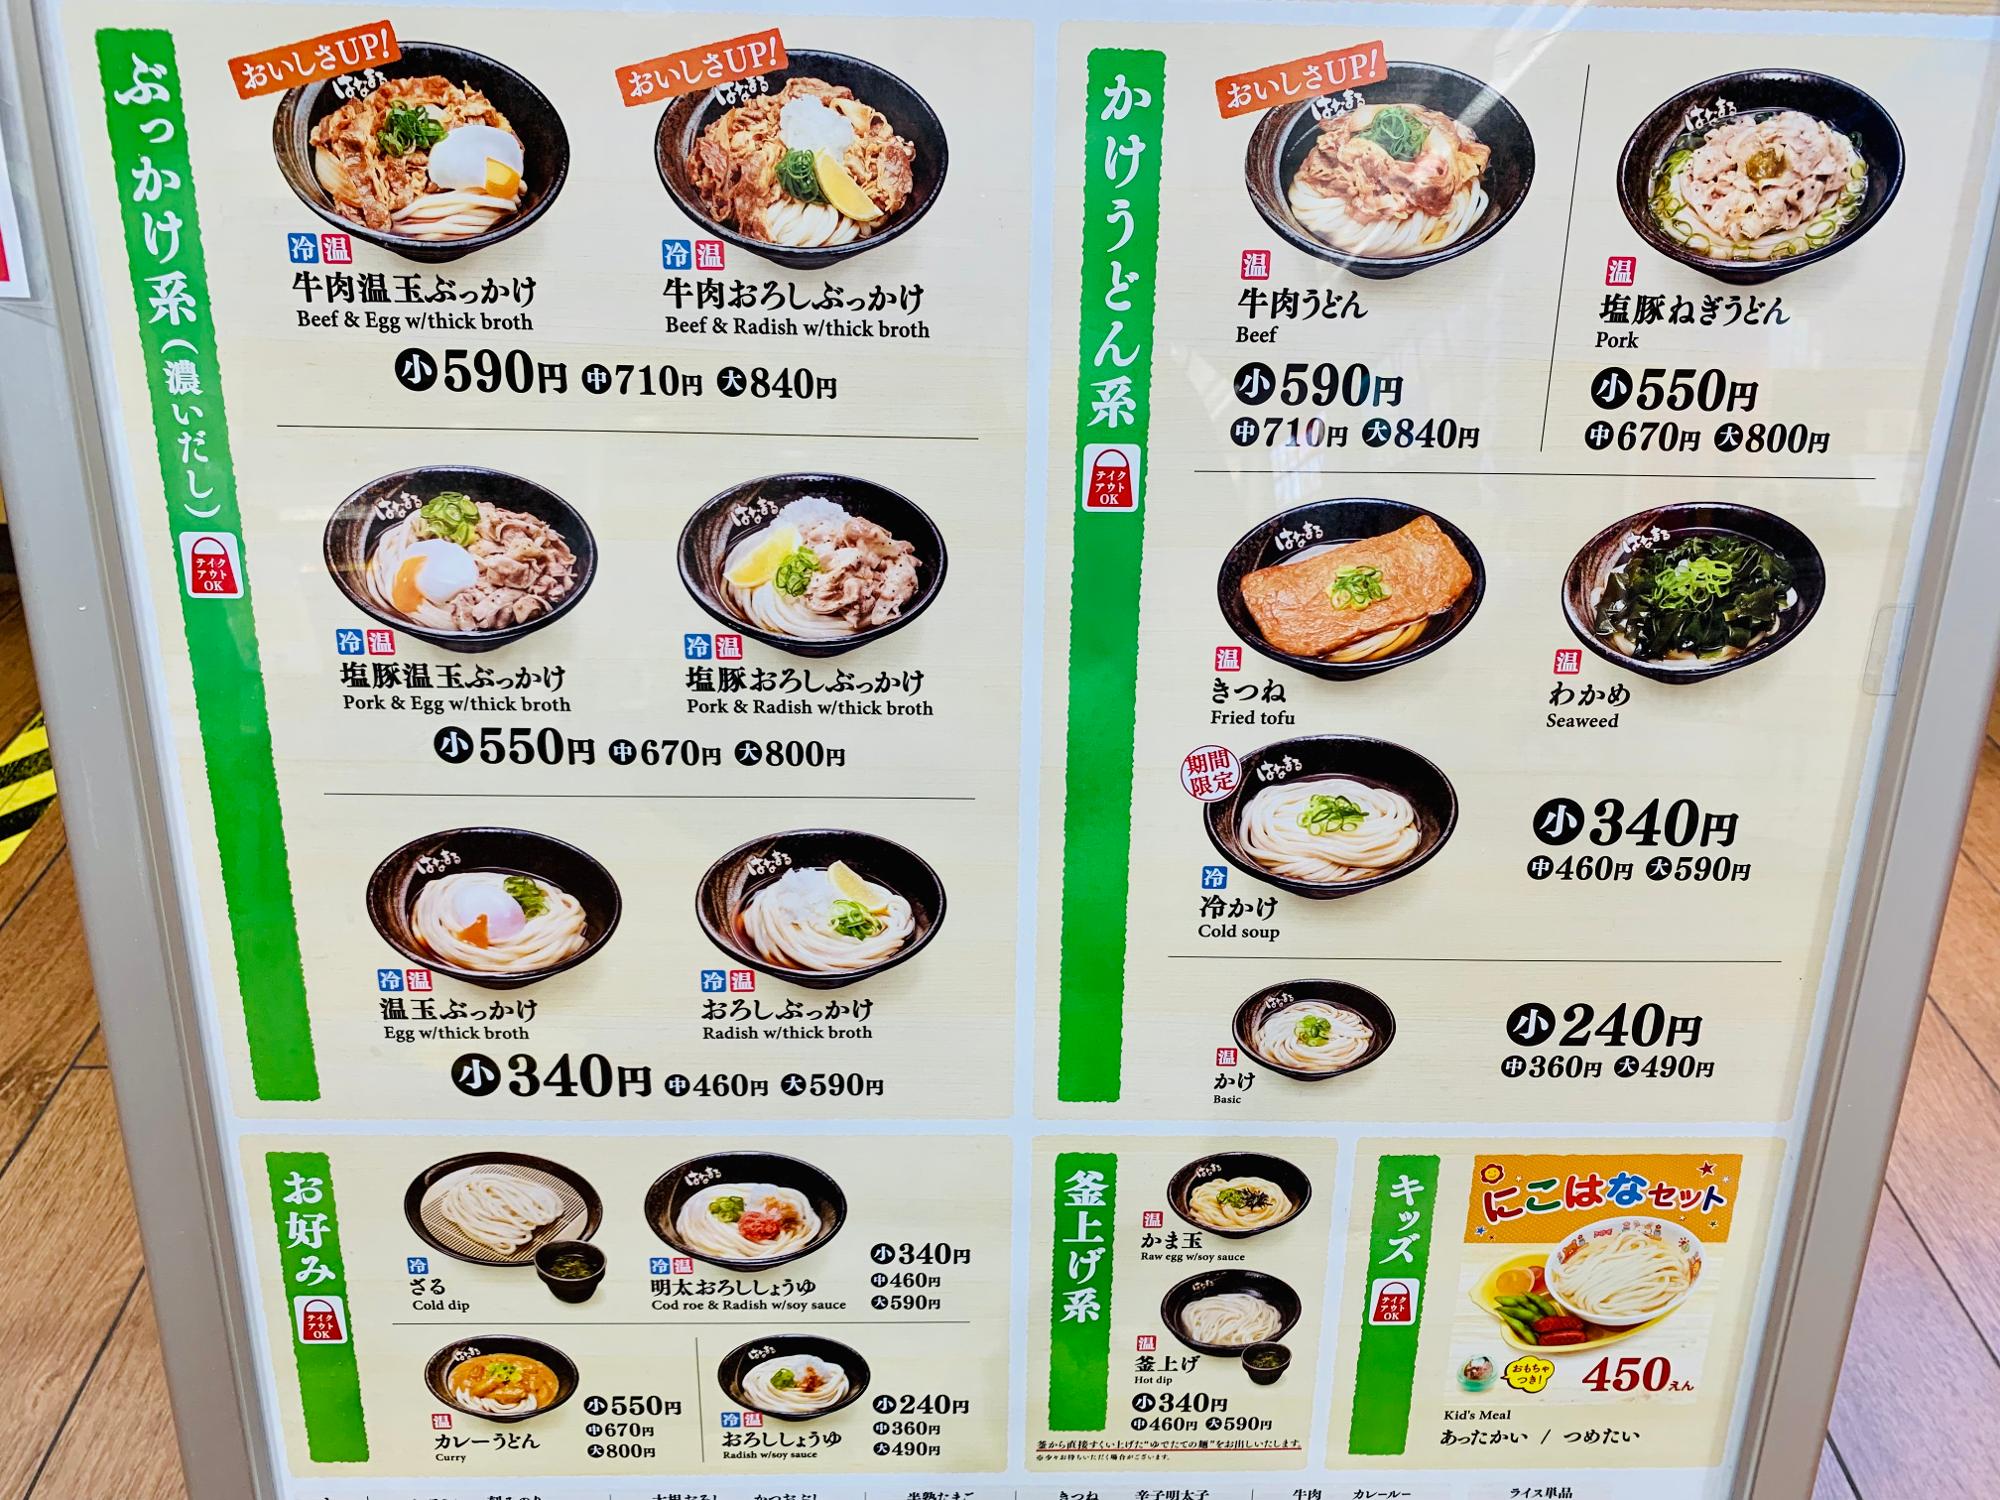 仙台市 人気のうどん弁当も はなまるうどん のテイクアウトが全品 Off Noririn Yahoo Japan クリエイターズプログラム